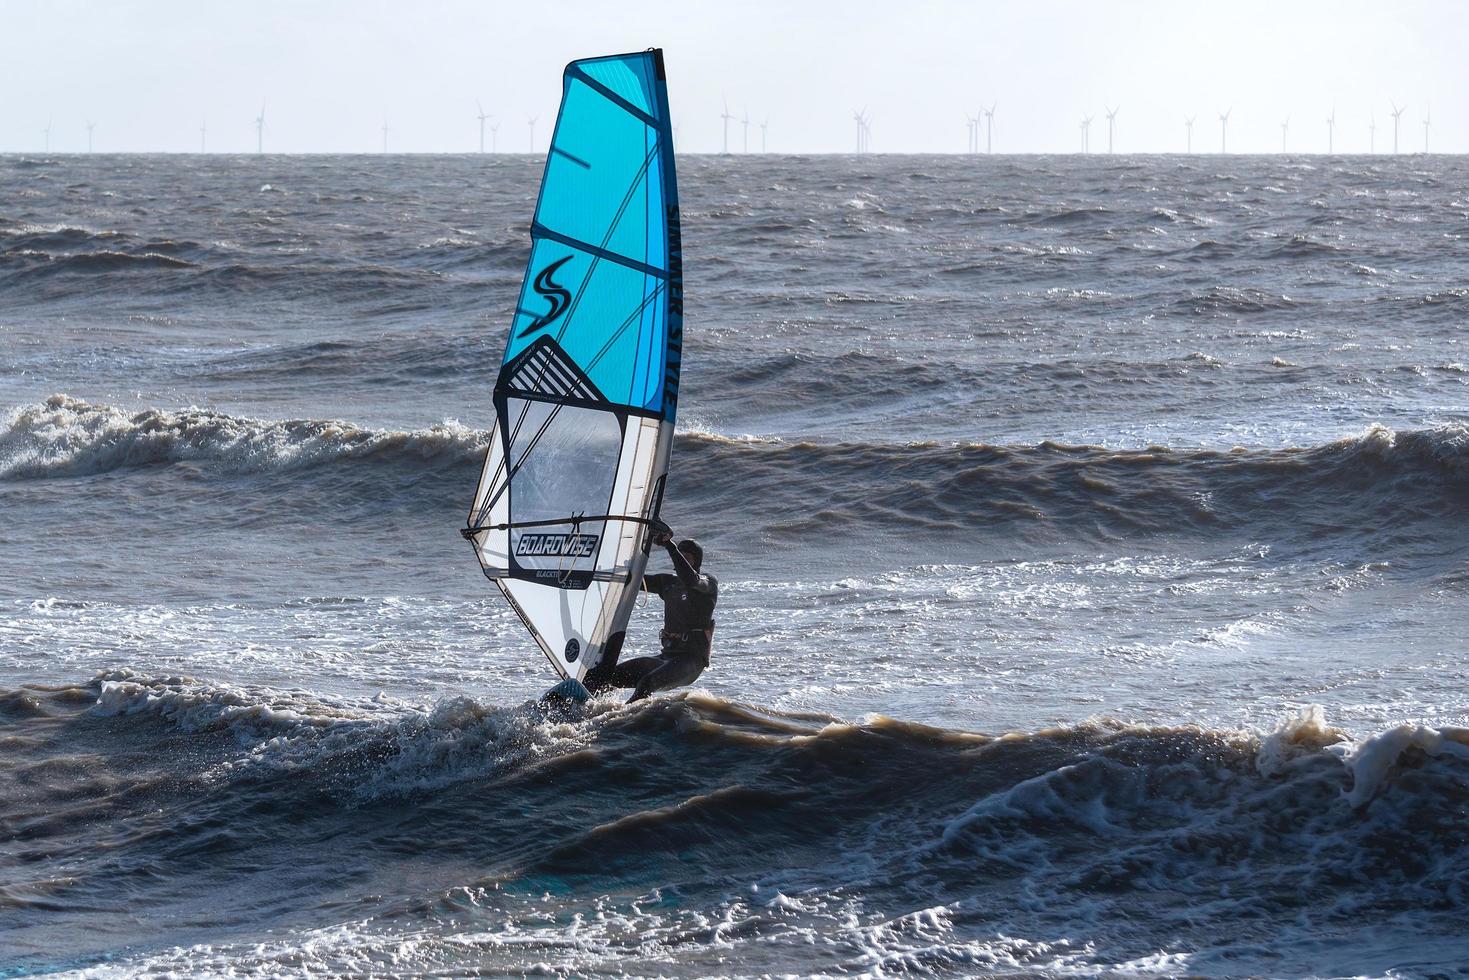 goring-by-sea, west sussex, Storbritannien, 2020. vindsurfare på goring-by-sea i west sussex den 28 januari 2020. oidentifierad person foto